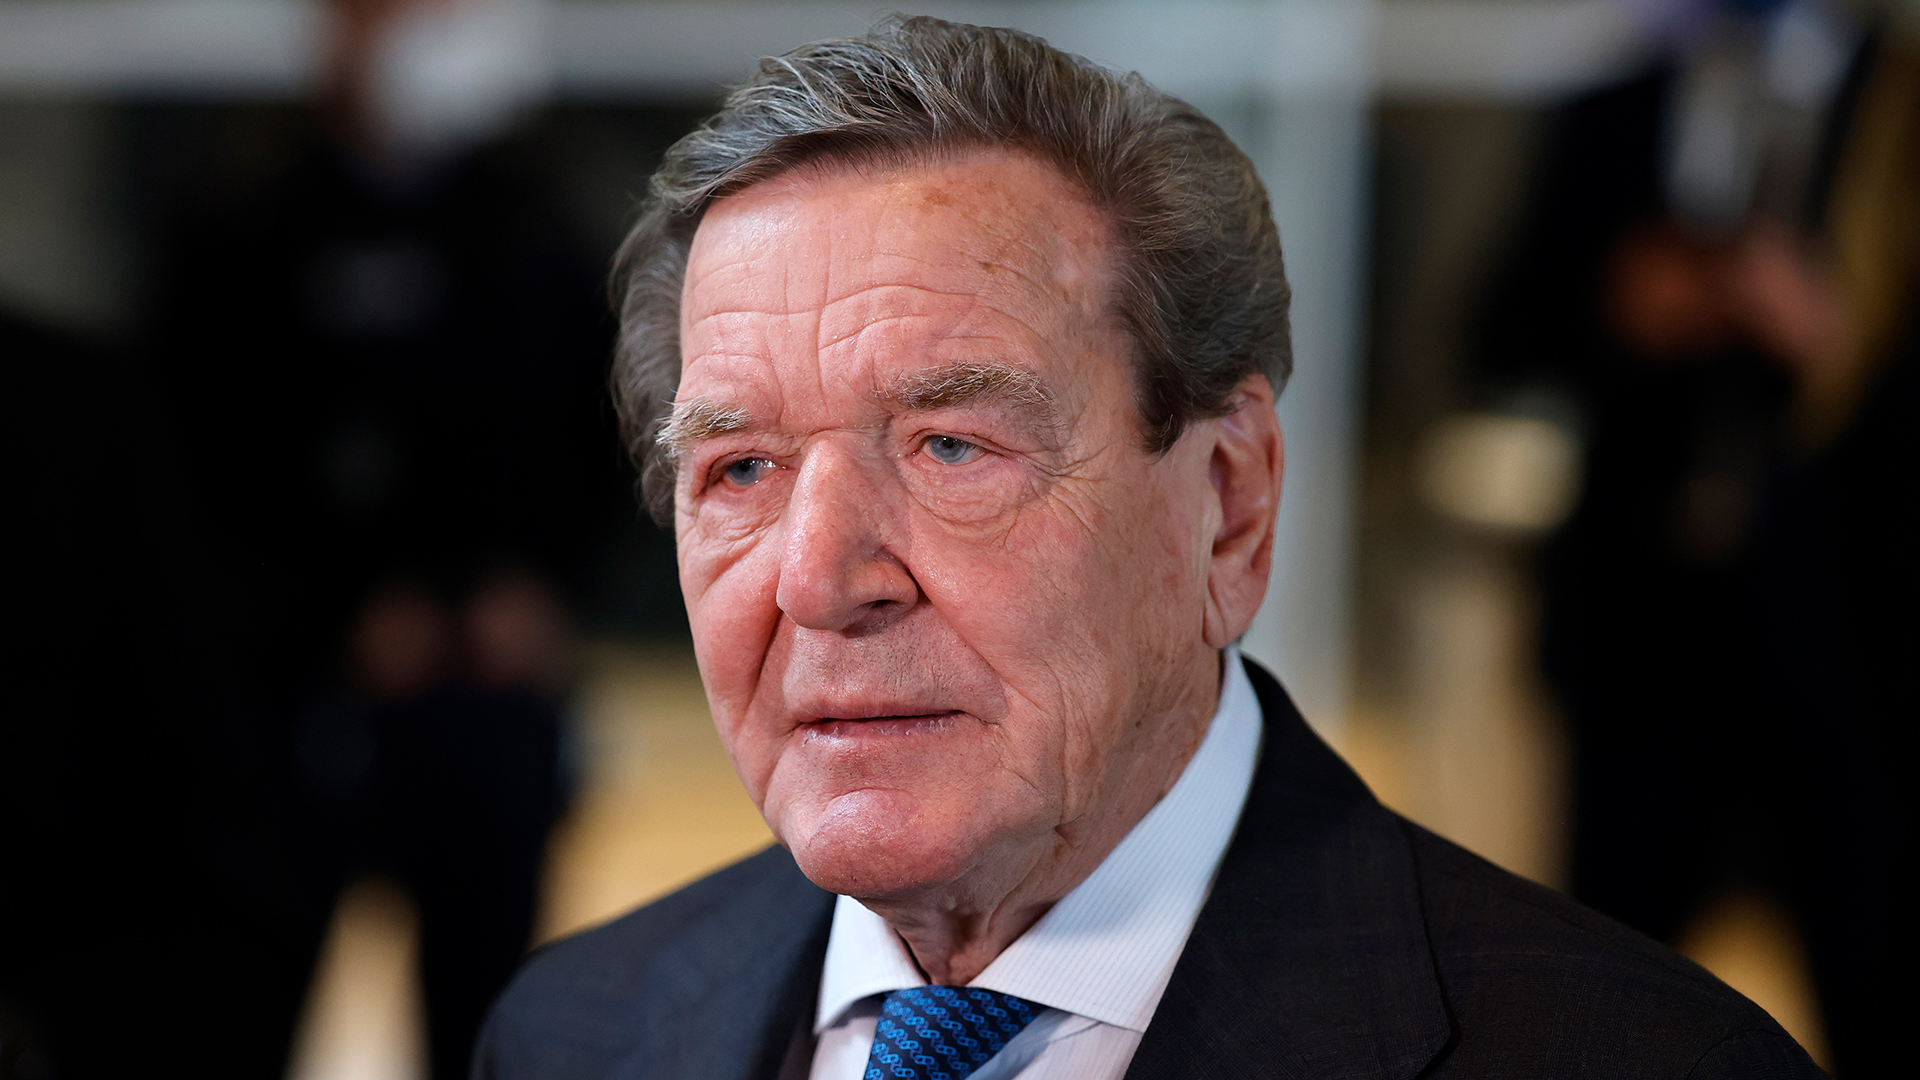 Altkanzler Schröder verlässt Aufsichtsrat von Rosneft